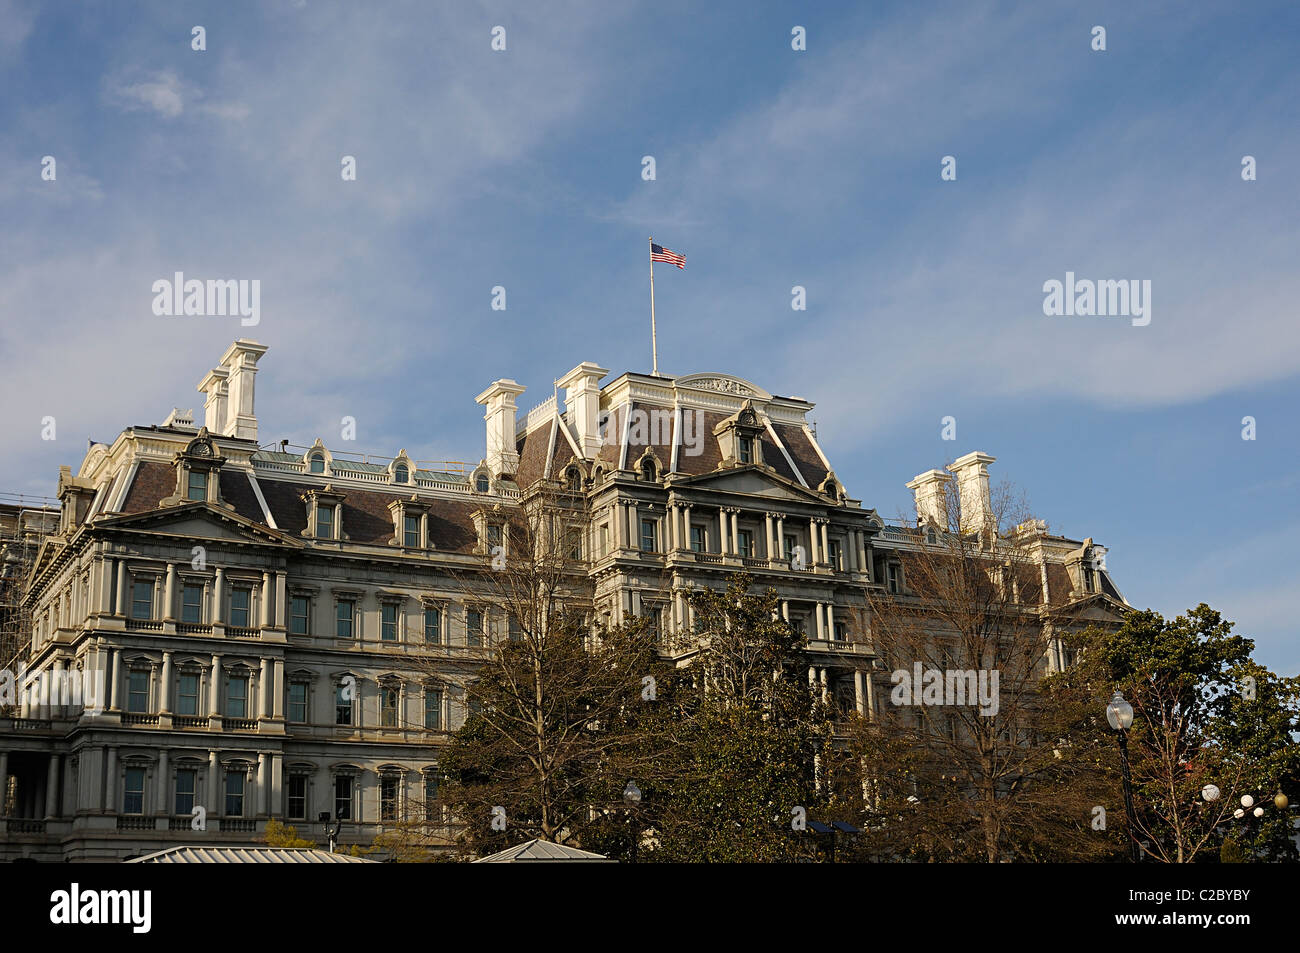 Fotografia del Dwight David Eisenhower Executive Office Building in Washington, D.C. su un bellissimo cielo blu al giorno. Foto Stock